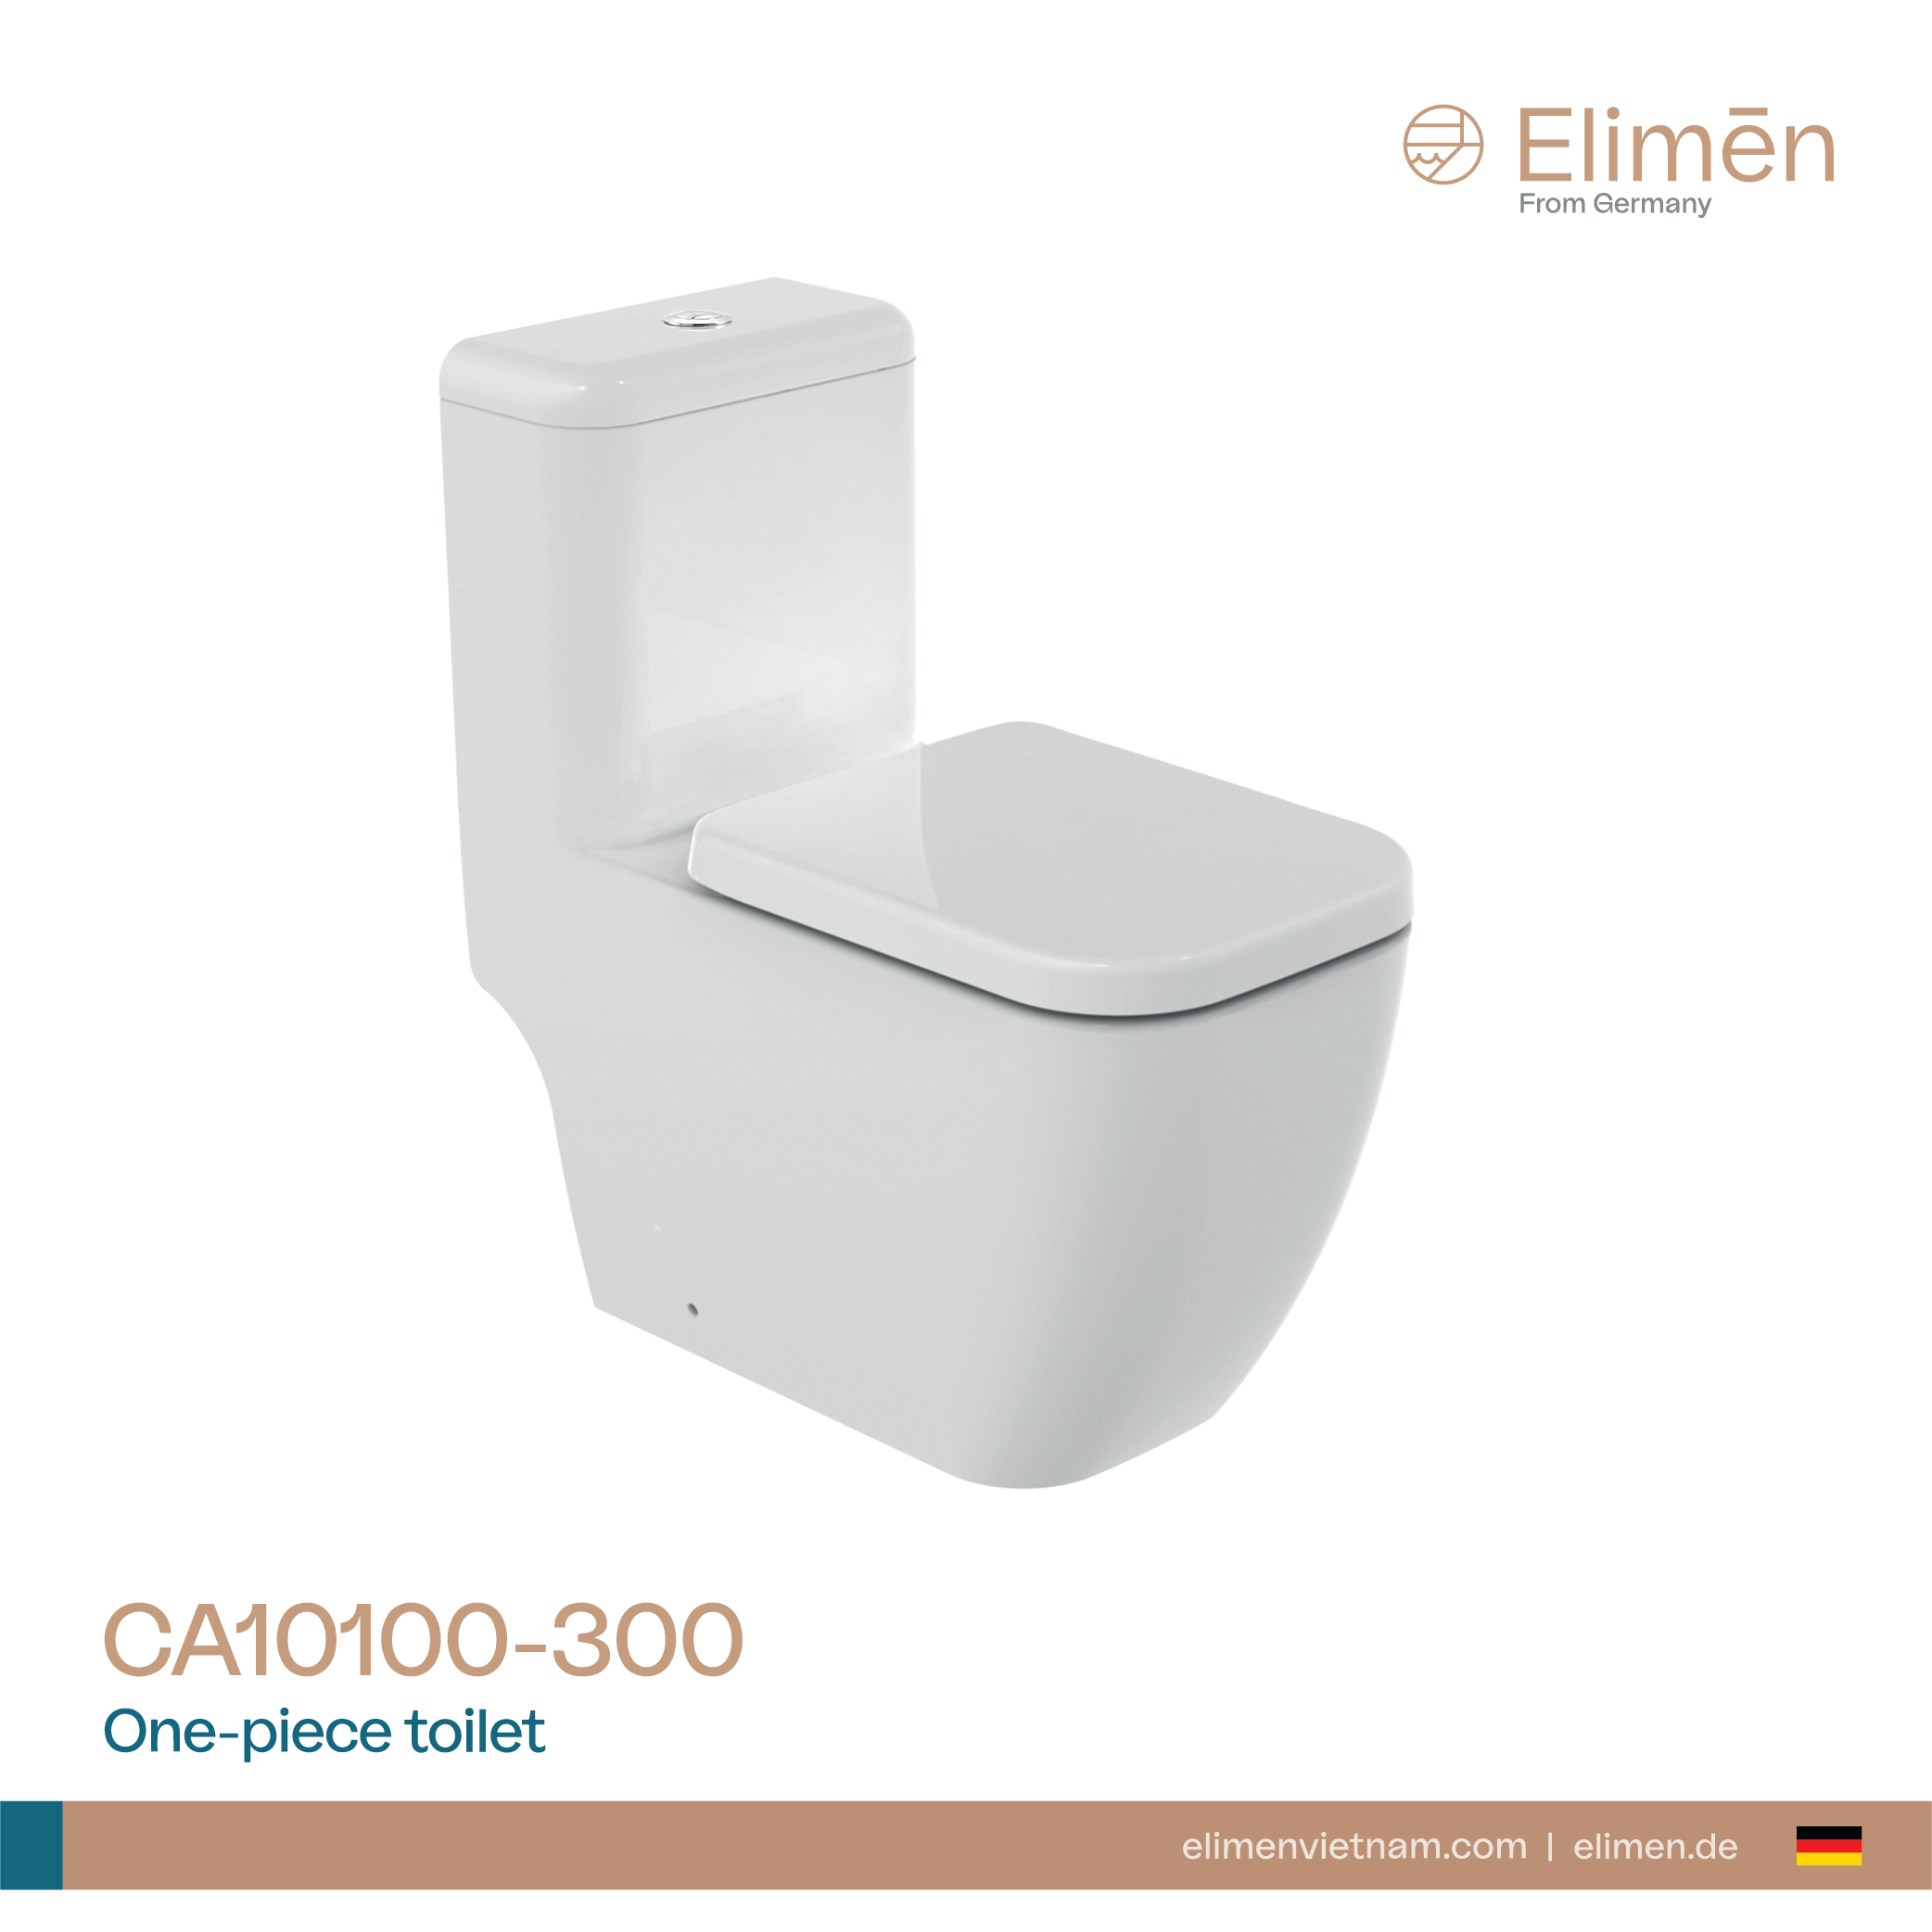 Elimen One-piece toilet - Code CA10100-305